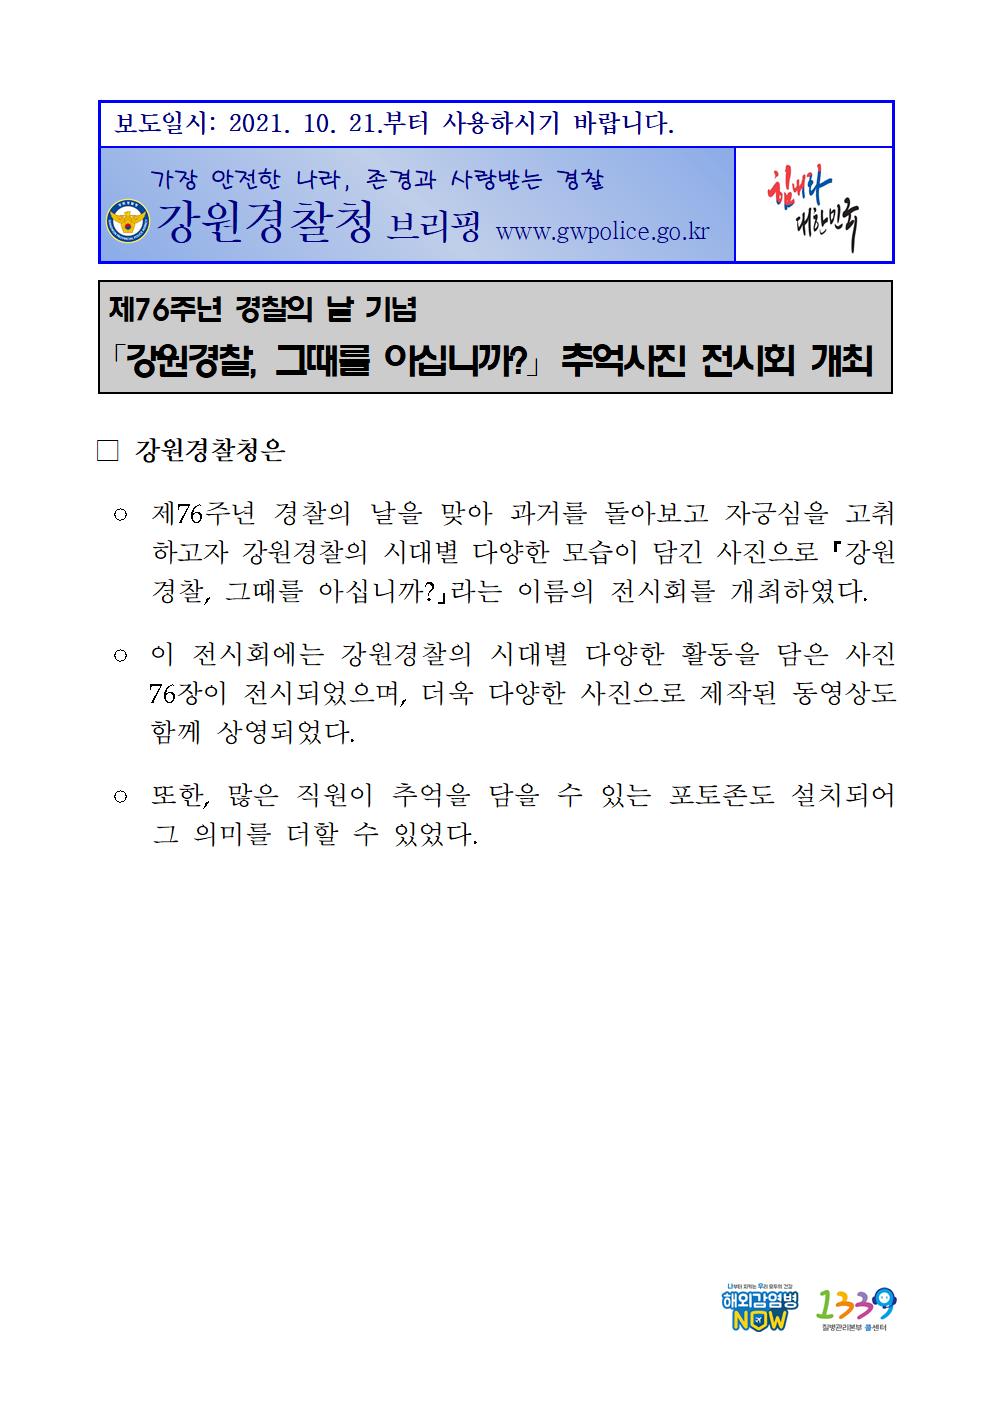 강원경찰, 그때를 아십니까? 추억사진 전시회 개최-★211021 (경무) 강원경찰1001